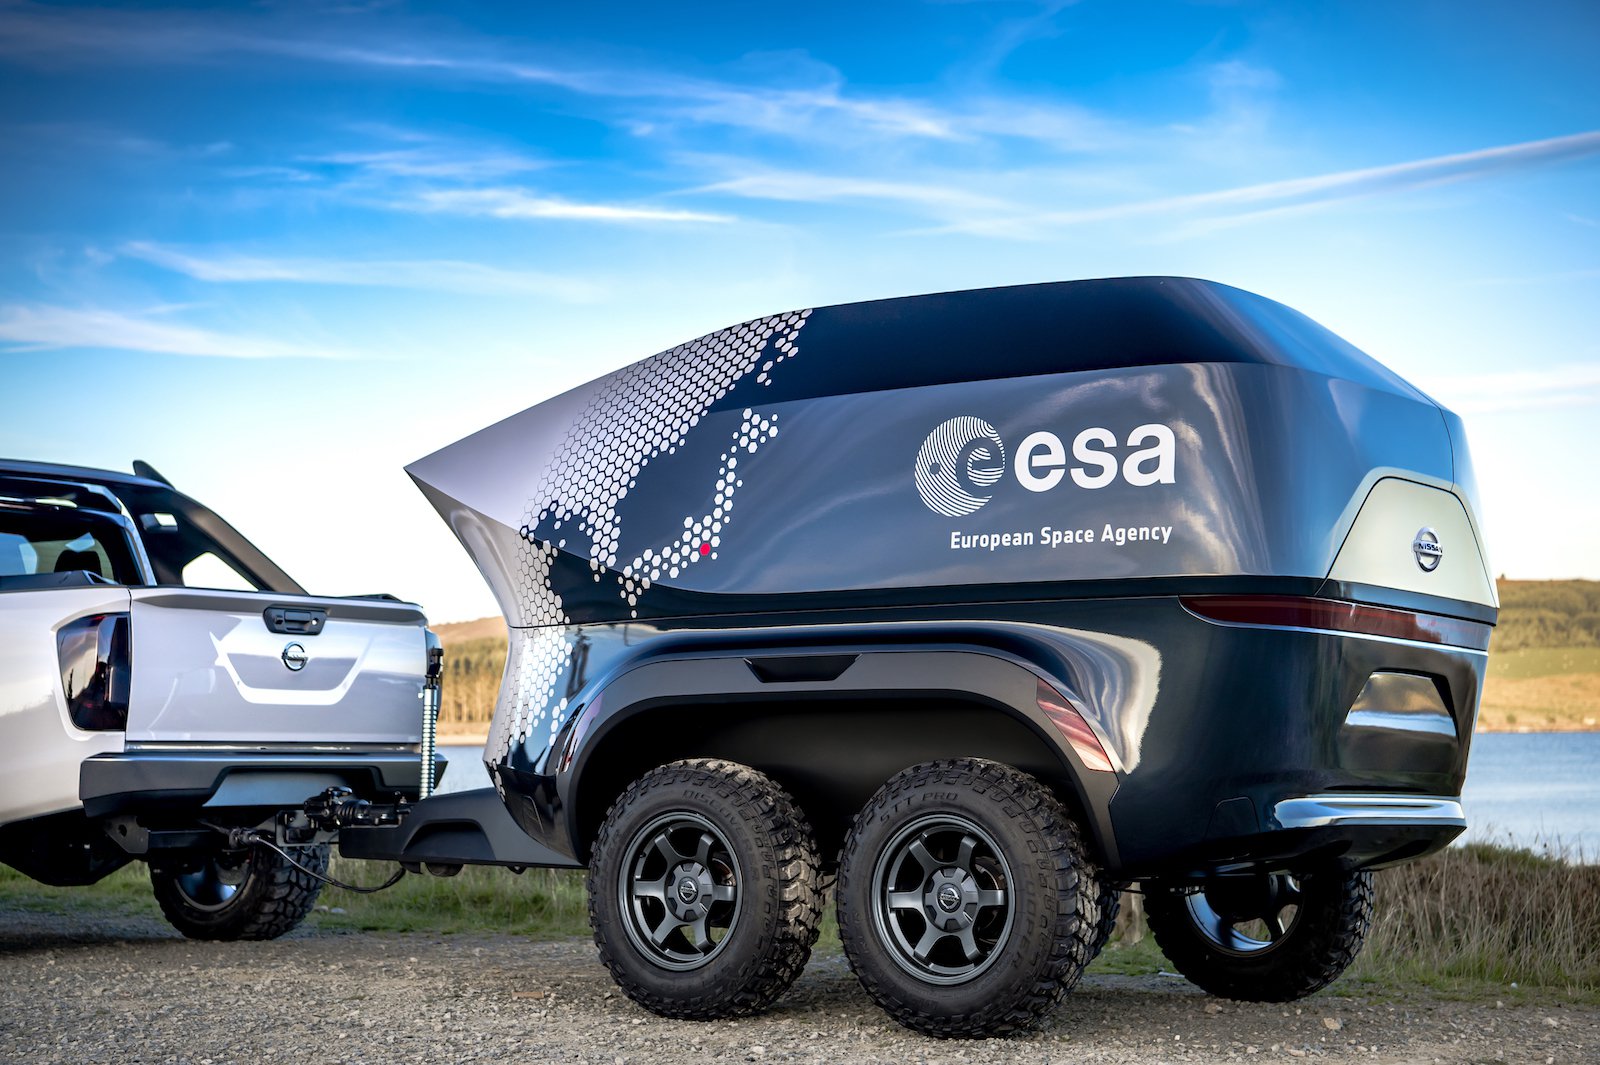 Nissan e l'ESA hanno presentato il suv per gli astronomi, dotato di un telescopio